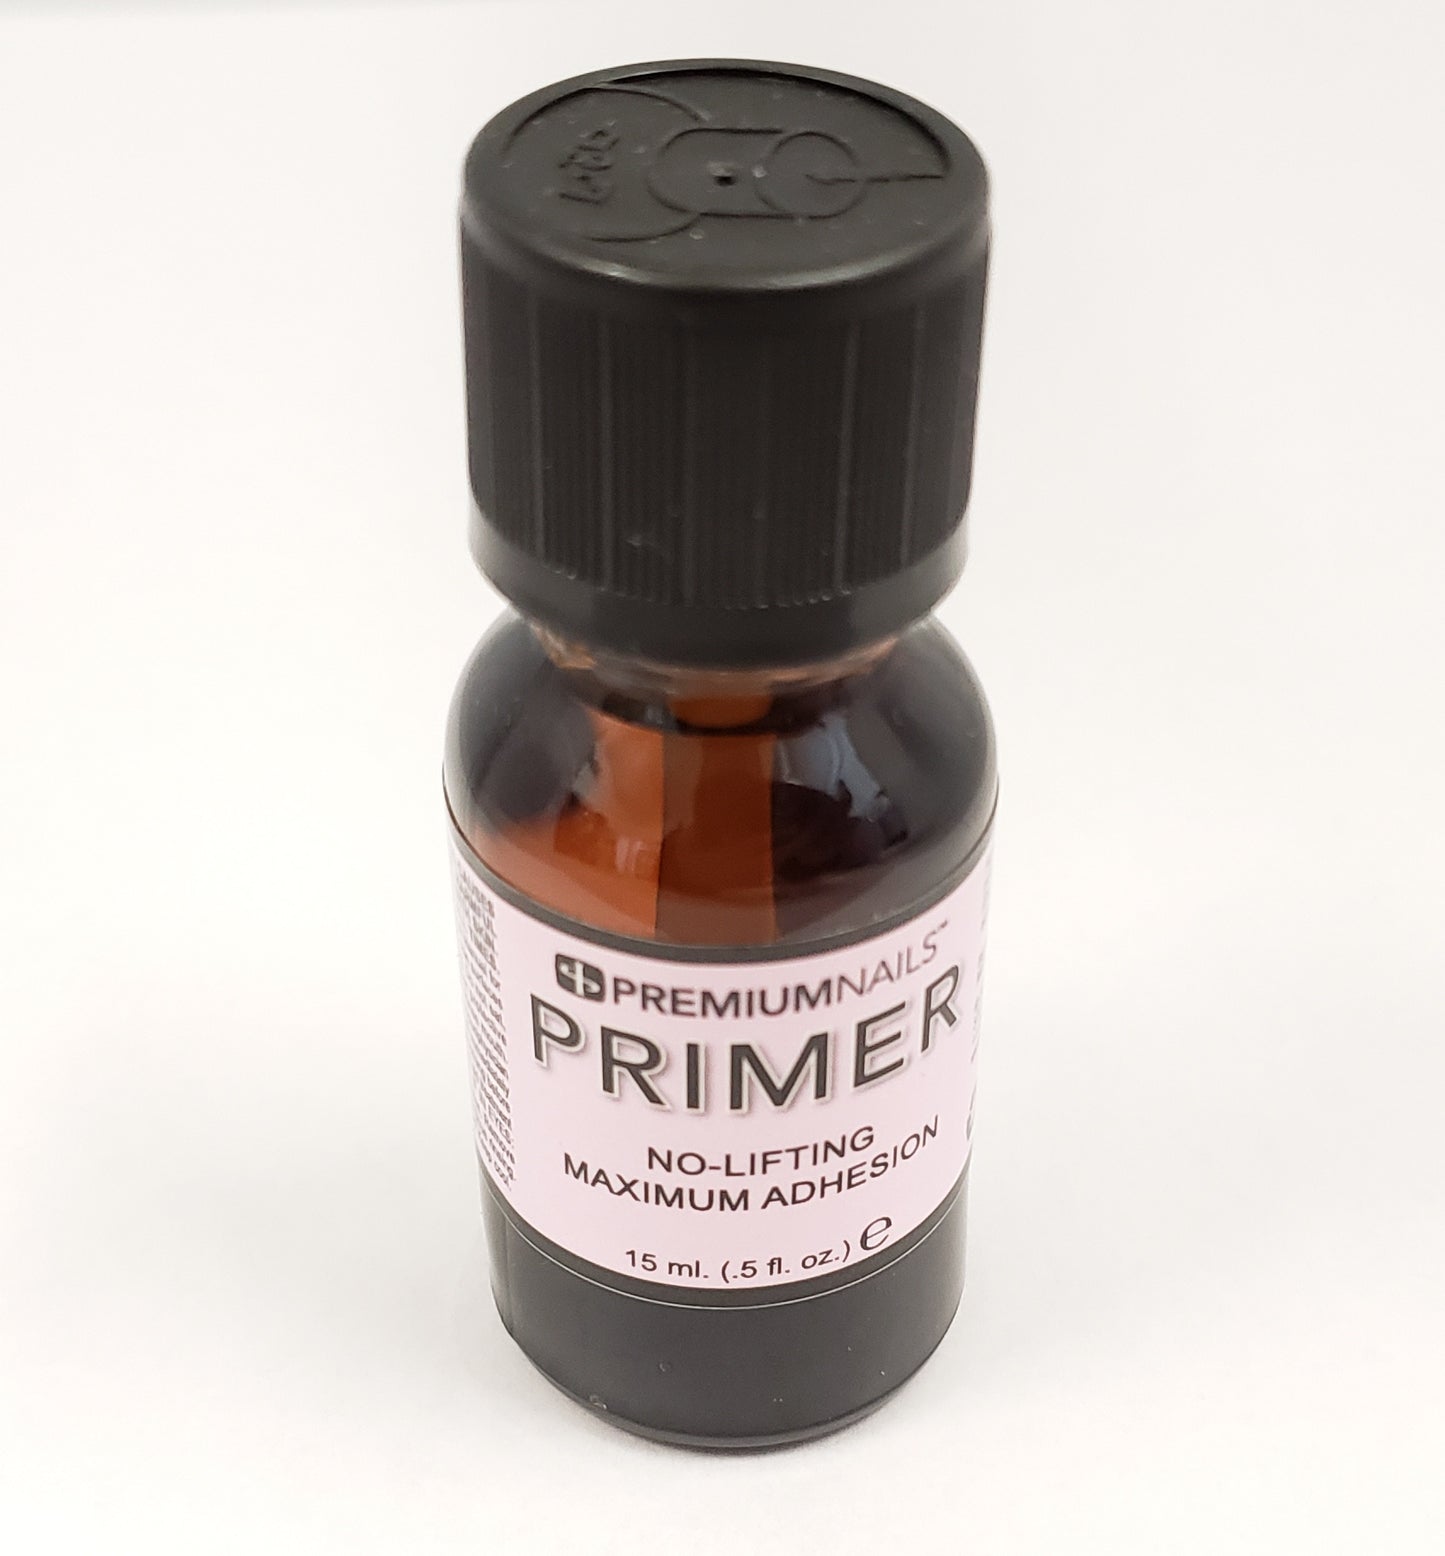 PREMIUMNAILS - PRIMER en polvo acrílico para uñas - 0.5 fl.oz/15ml - (Hecho en EE. UU.) 